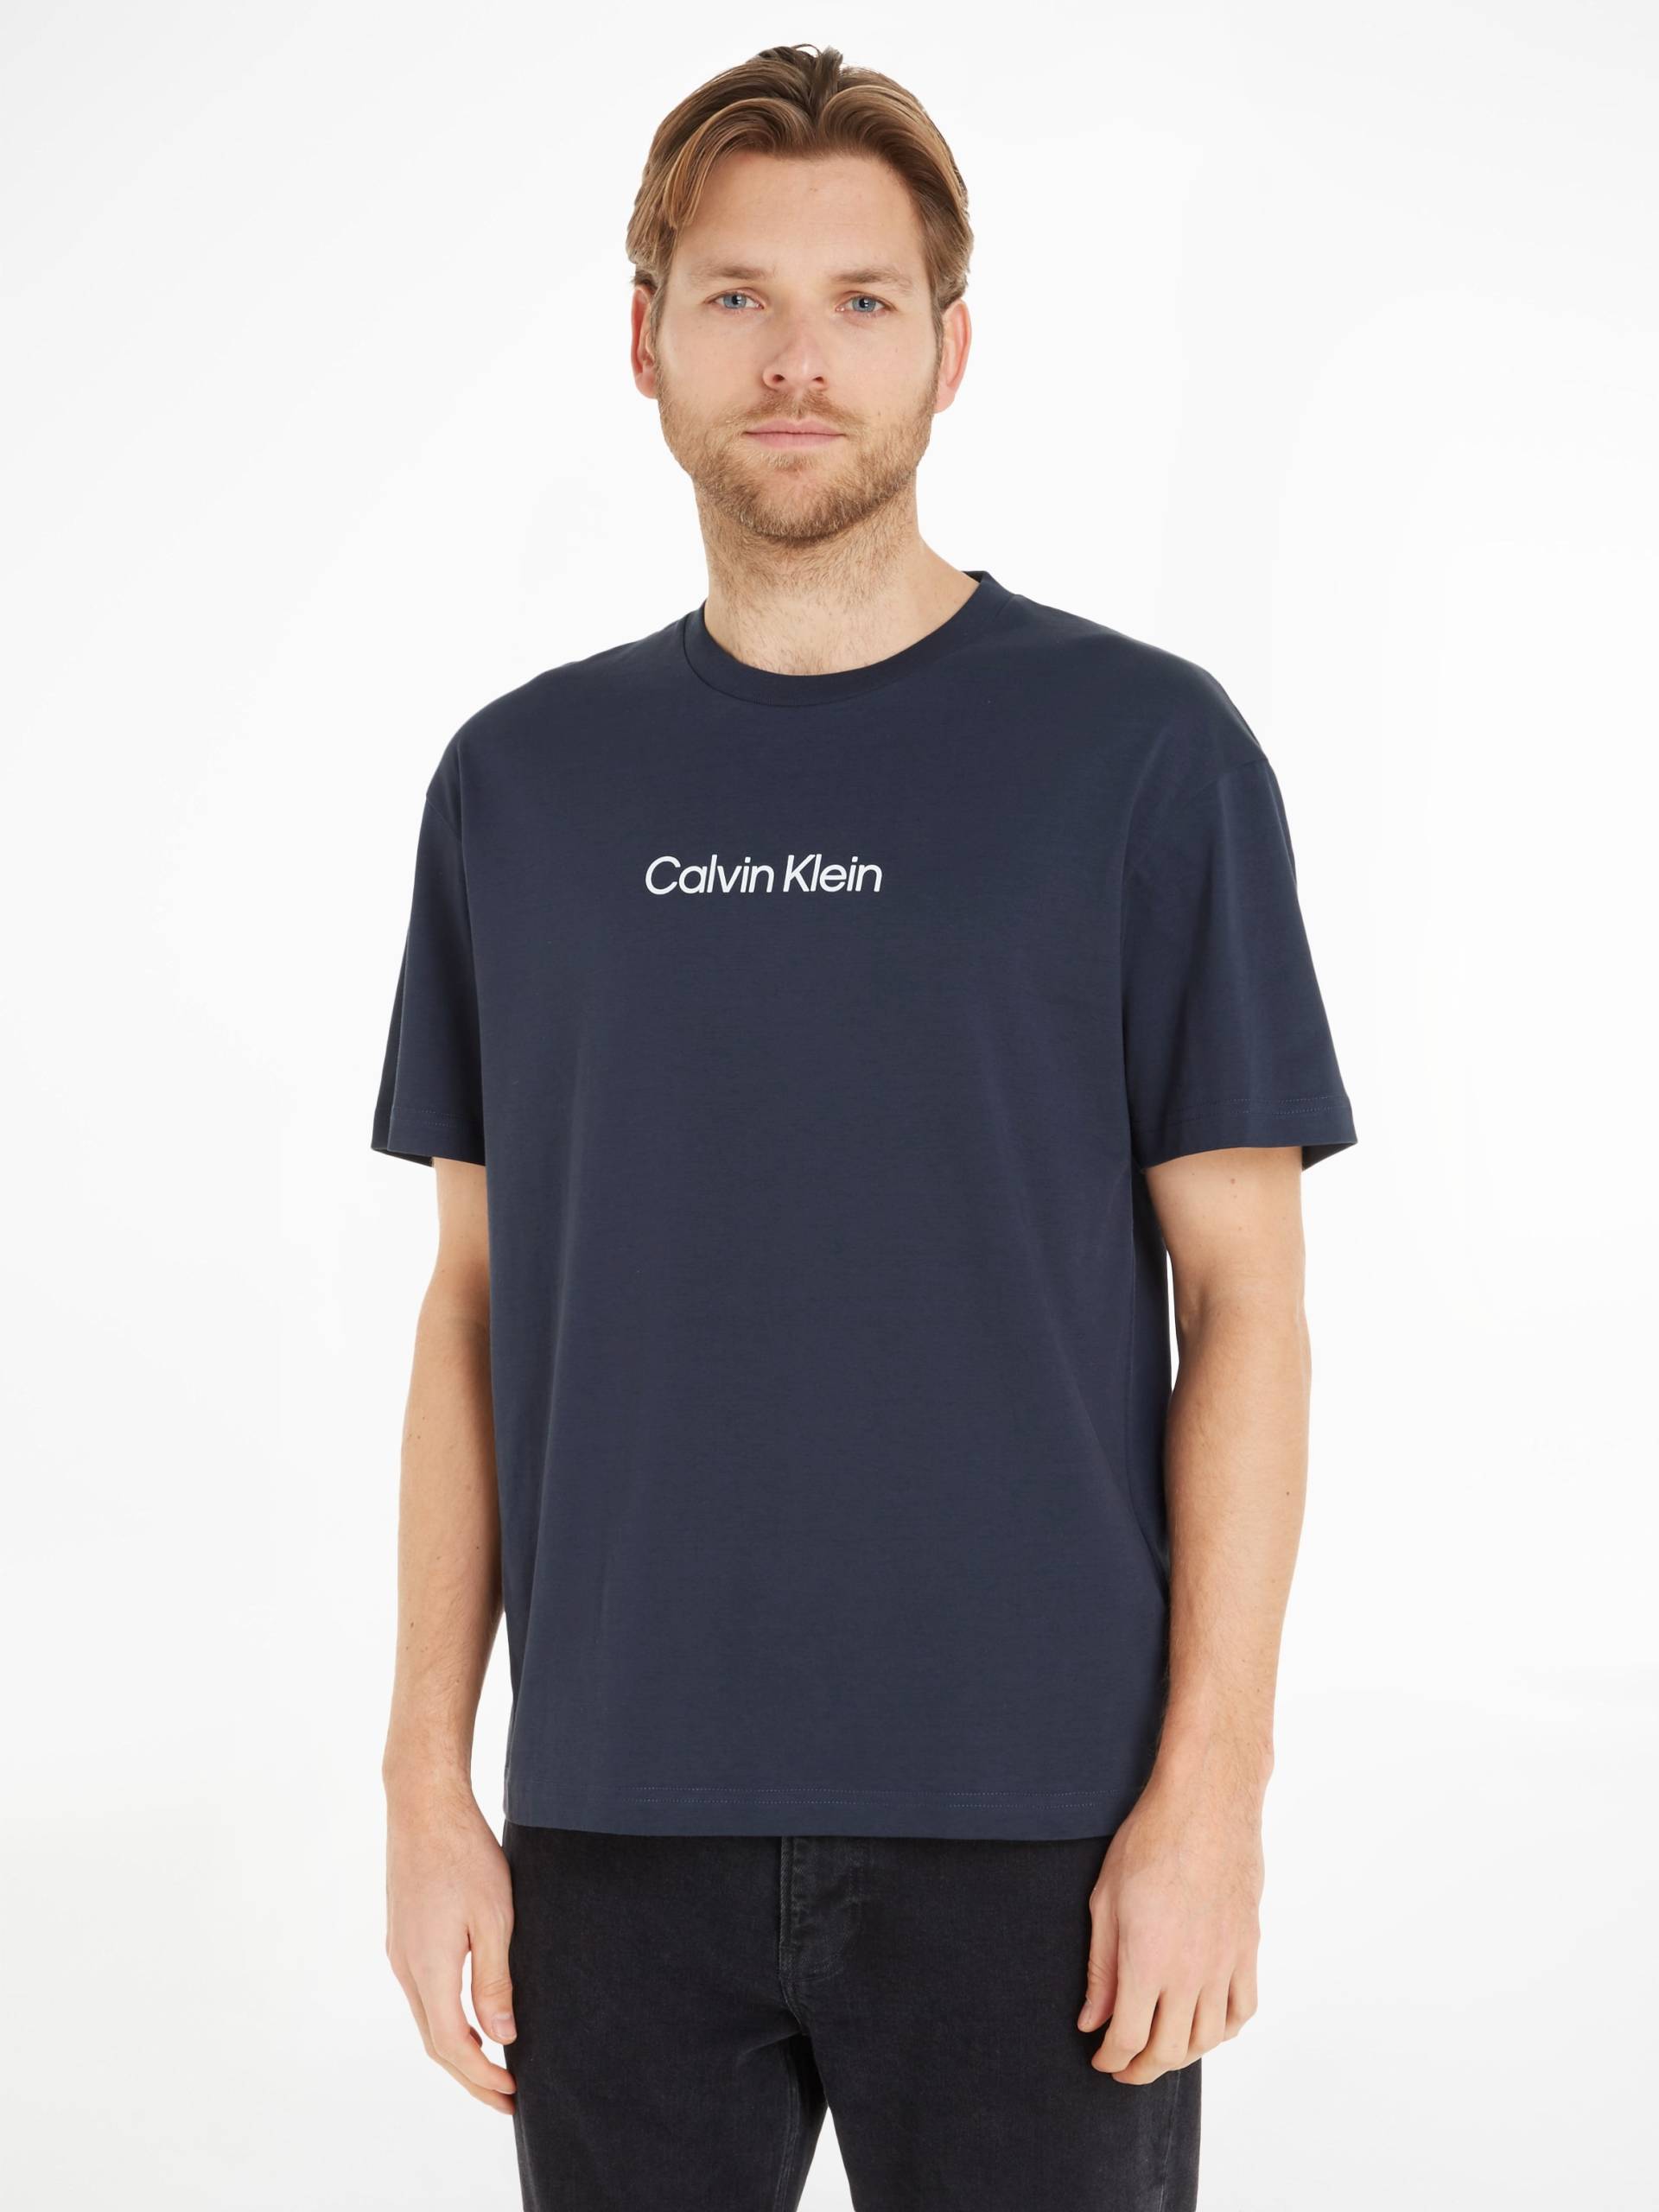 Calvin Klein T-Shirt »HERO LOGO COMFORT T-SHIRT« von Calvin Klein